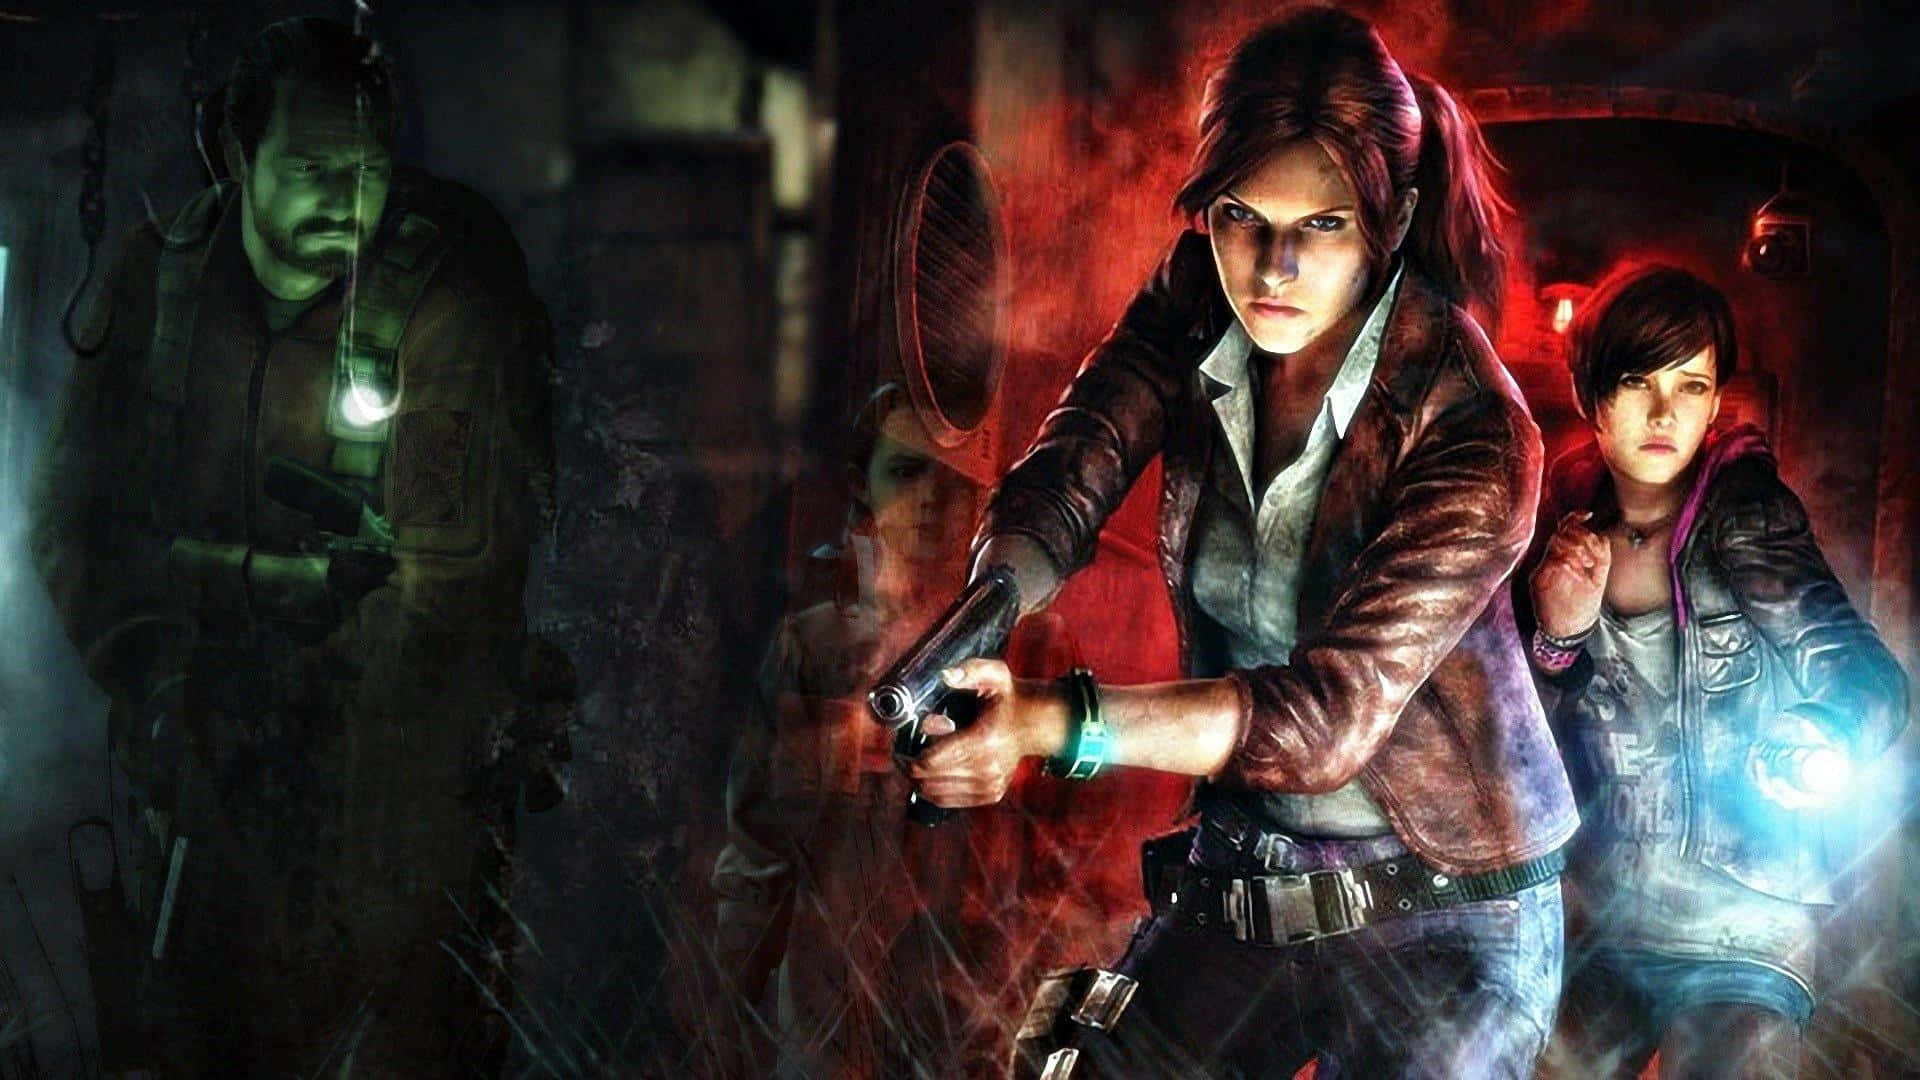 Action-Packed Adventure in Resident Evil Revelations 2 Wallpaper